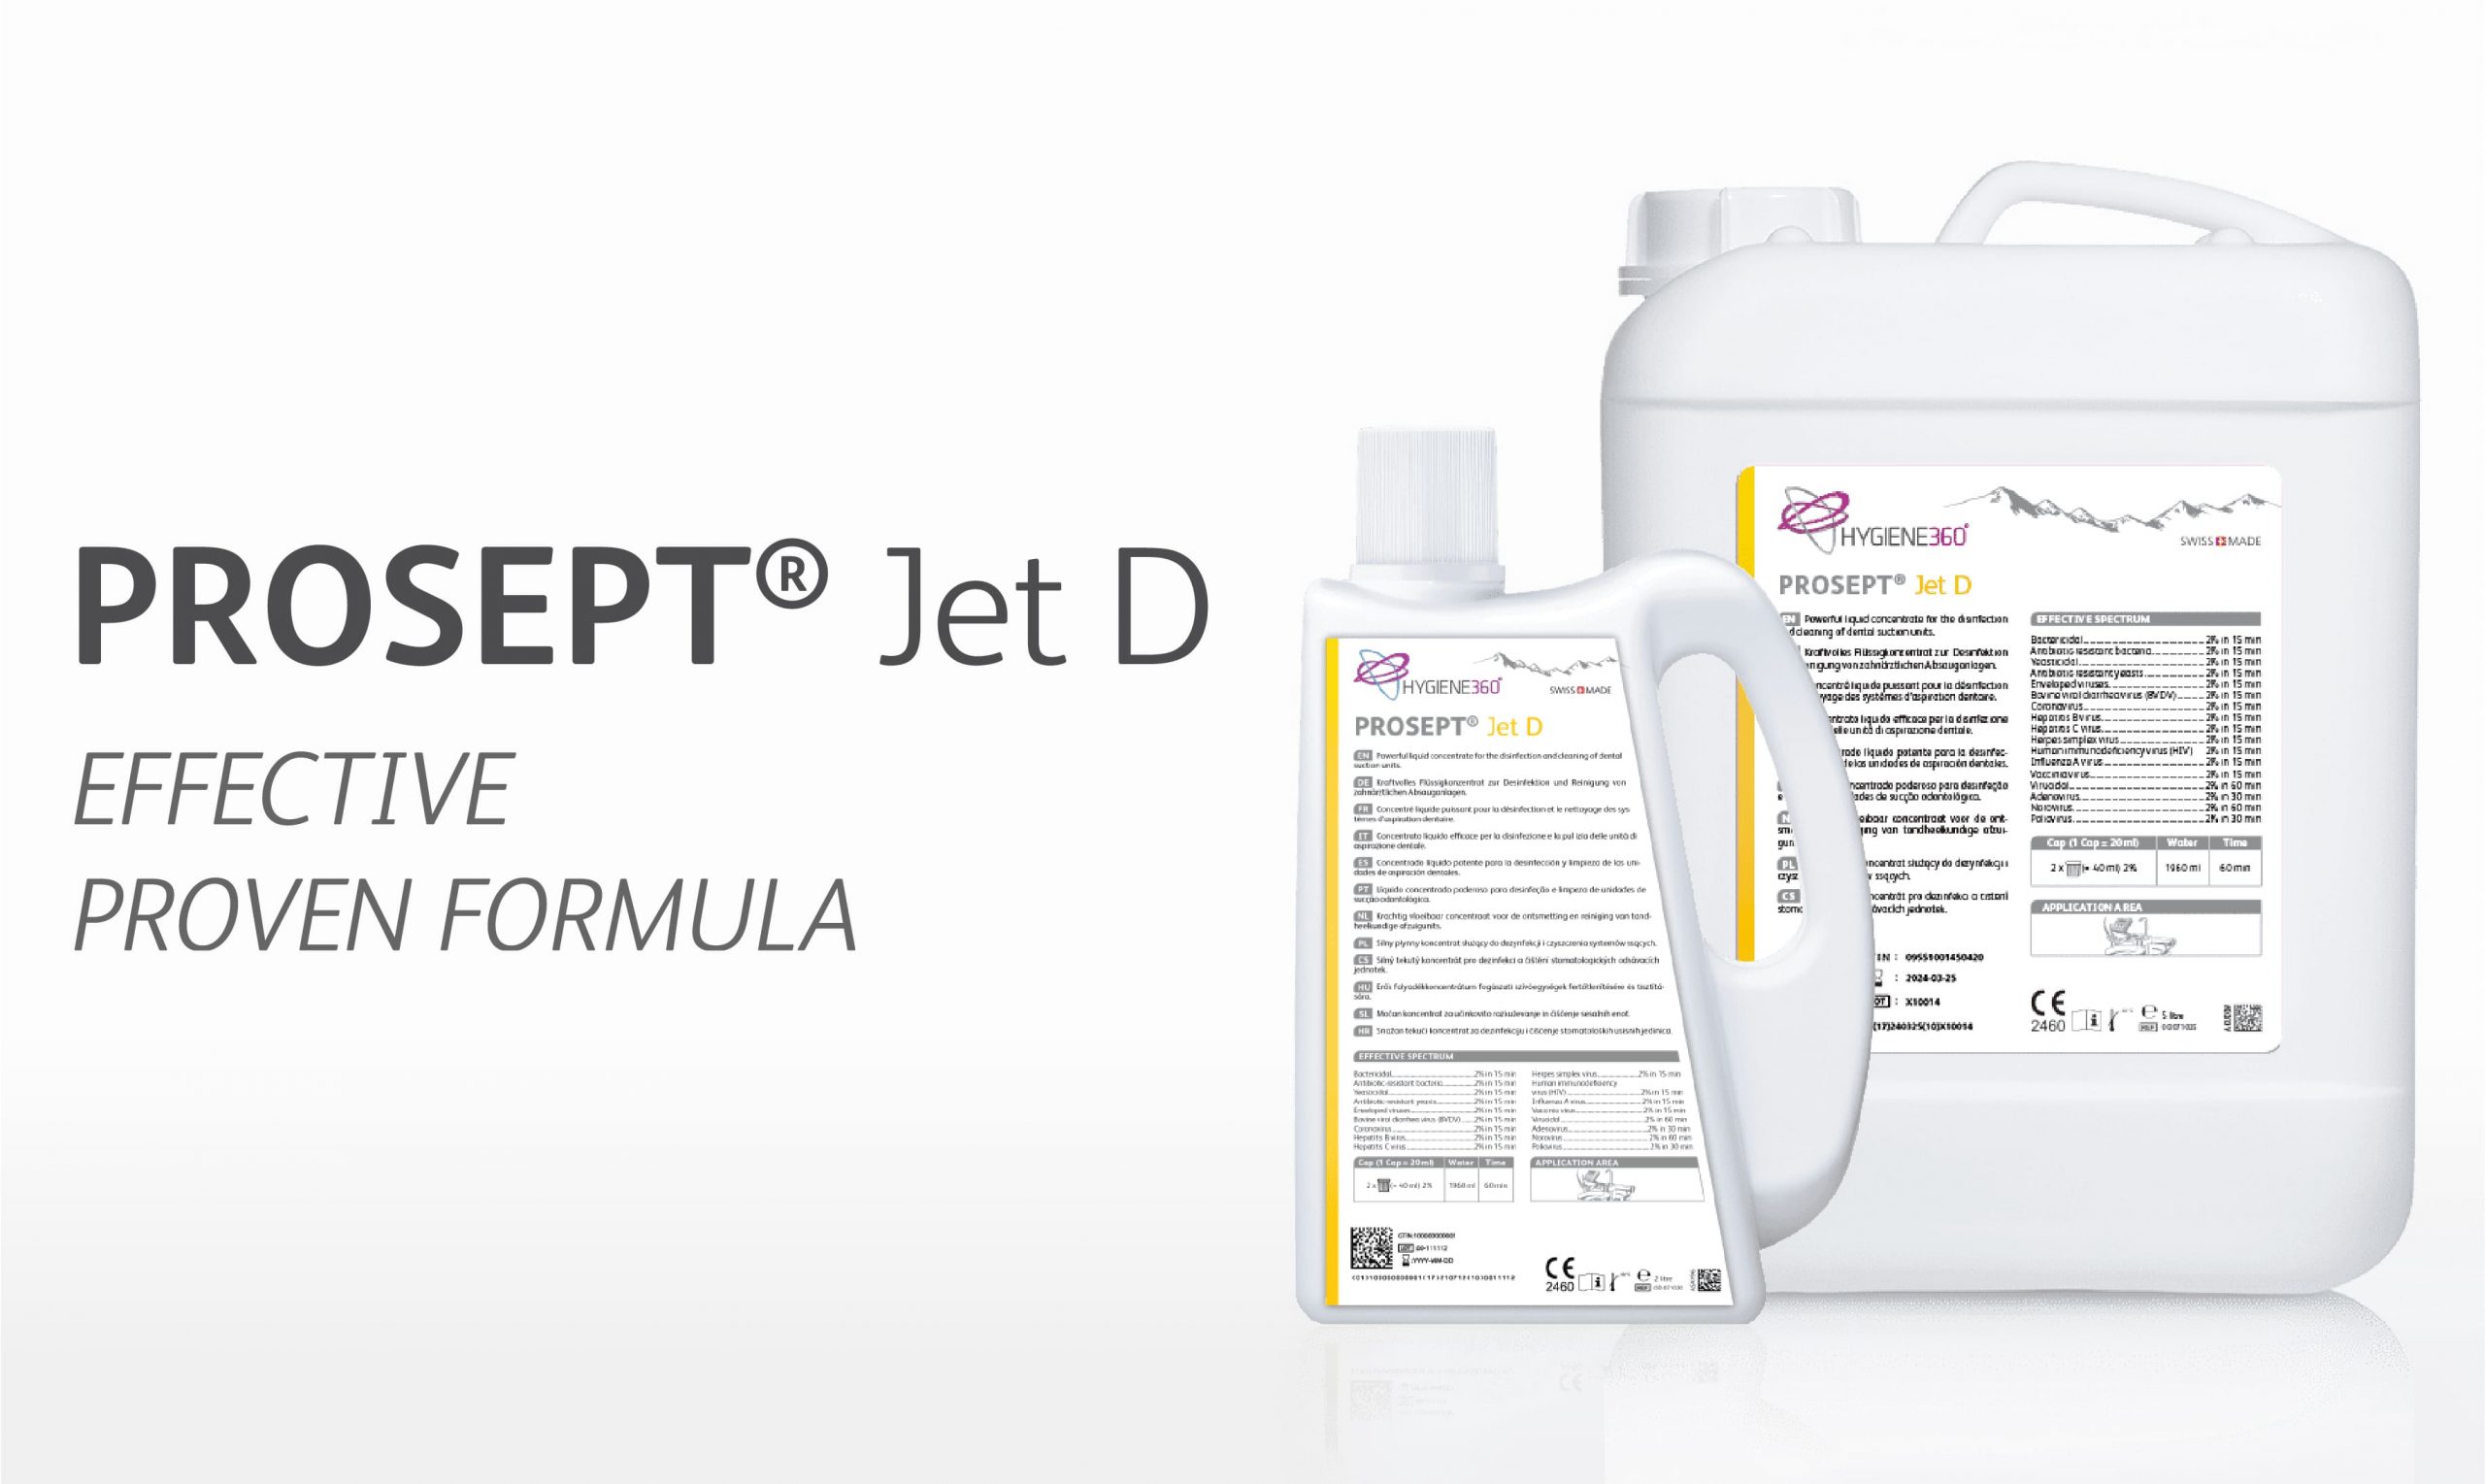 PROSEPT® Jet D